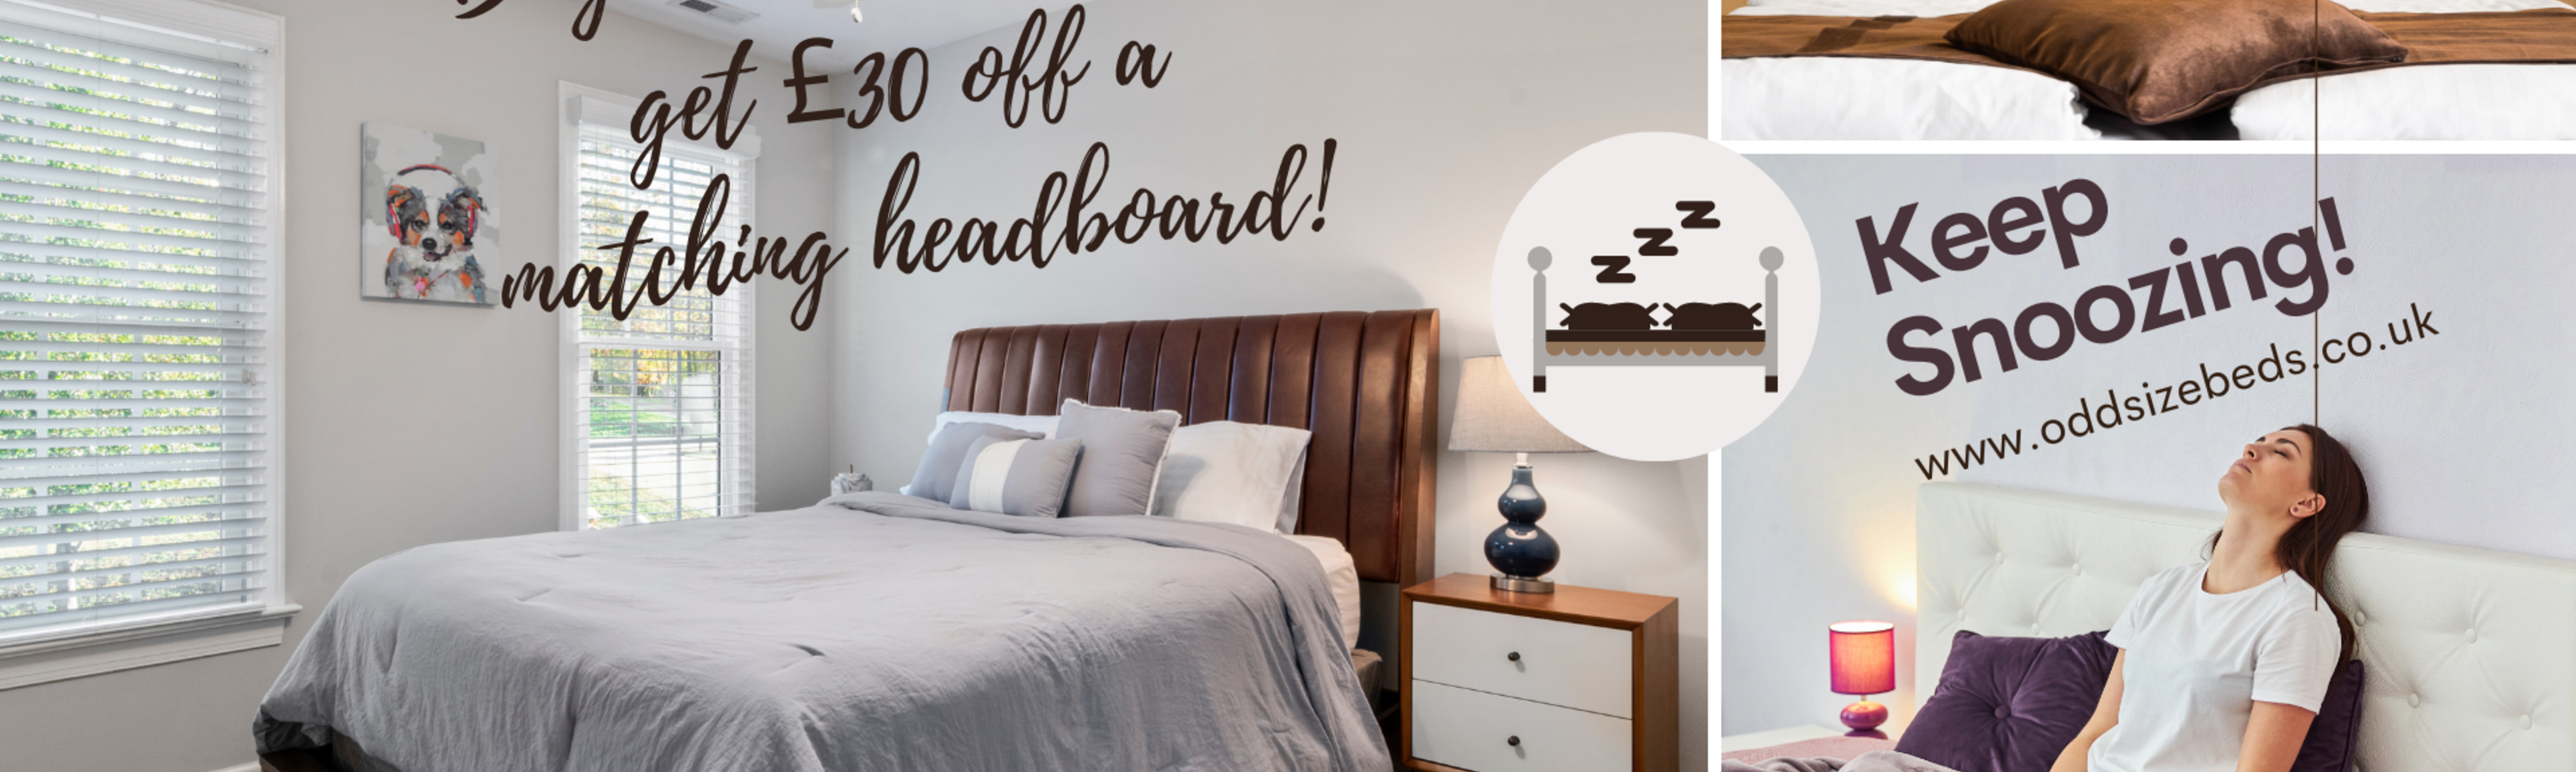 Buy a divan bed set & get £30 off a matching headboard!